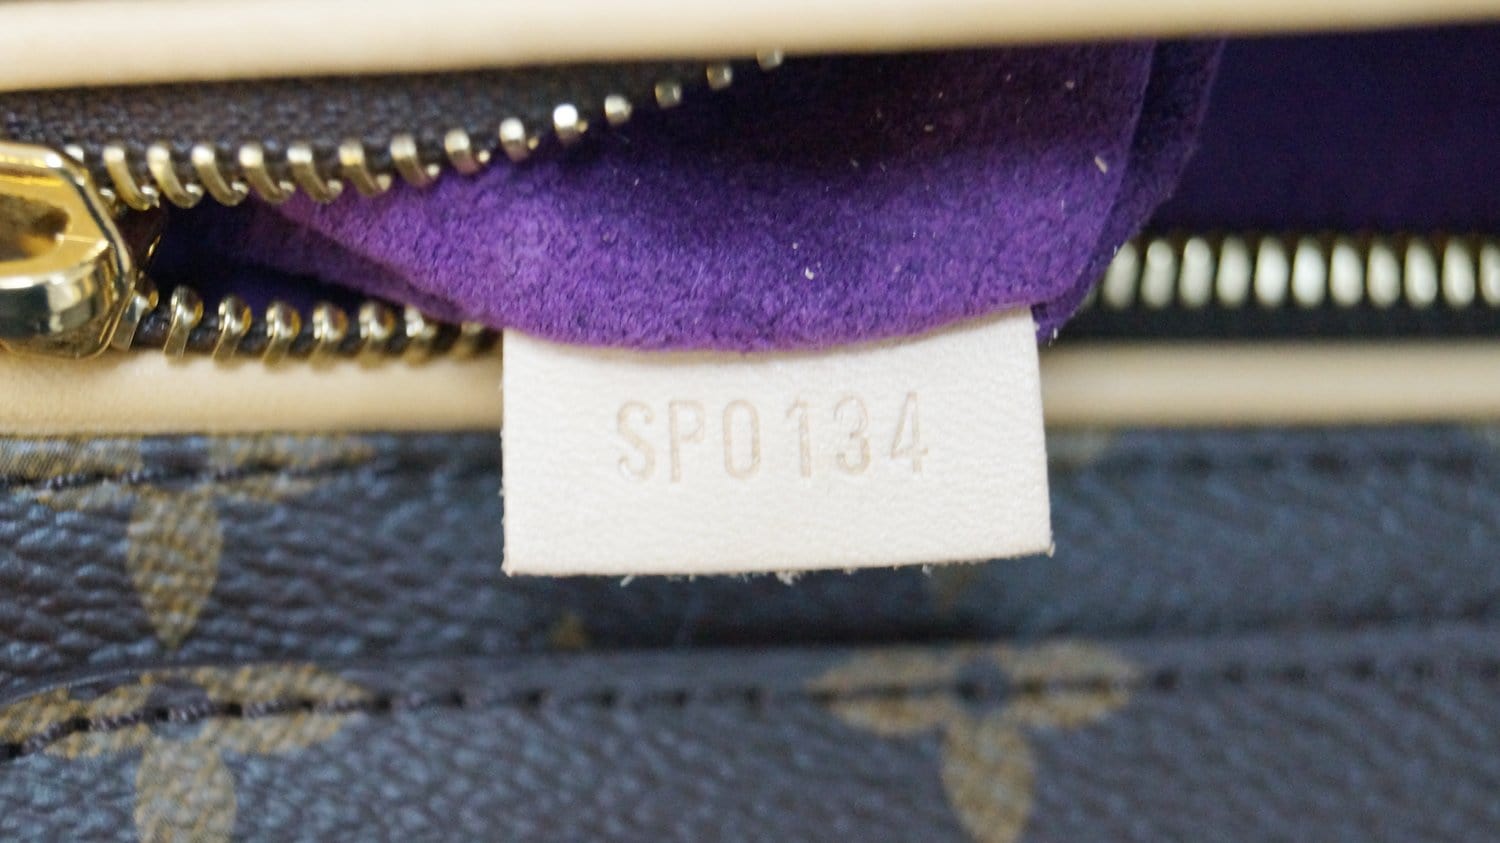 Louis Vuitton Monogram Paint Can Bag - Purple Other, Bags - LOU801539